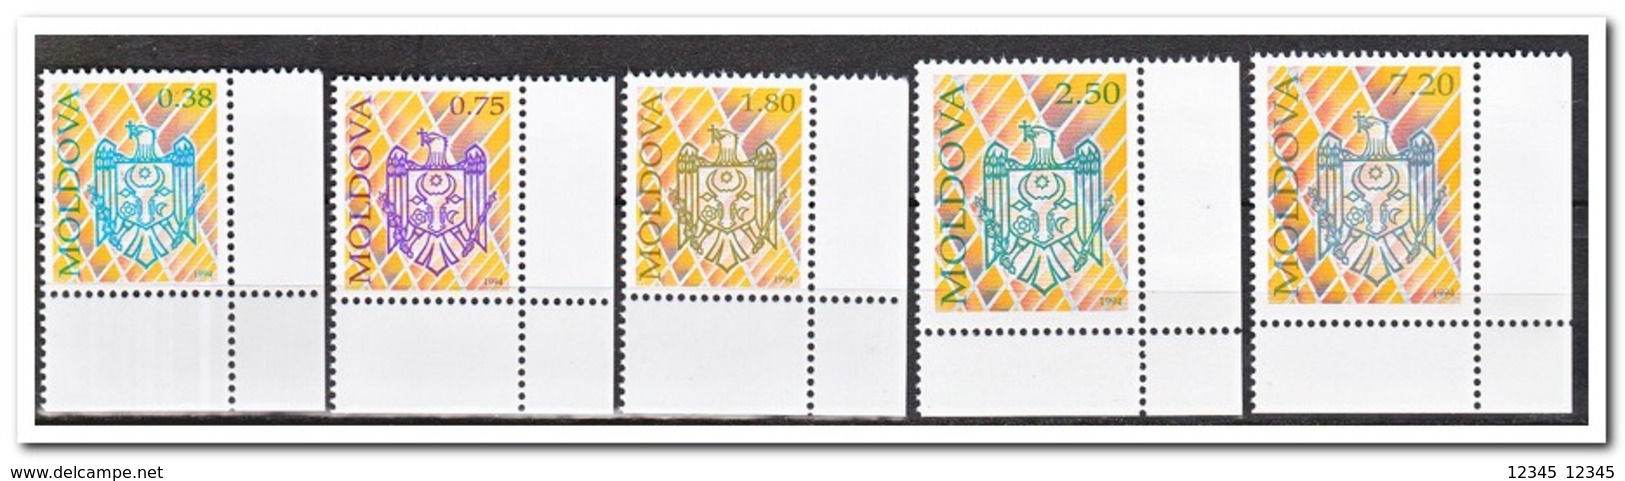 Moldavië 1994, Postfris MNH, State Emblem - Moldavië